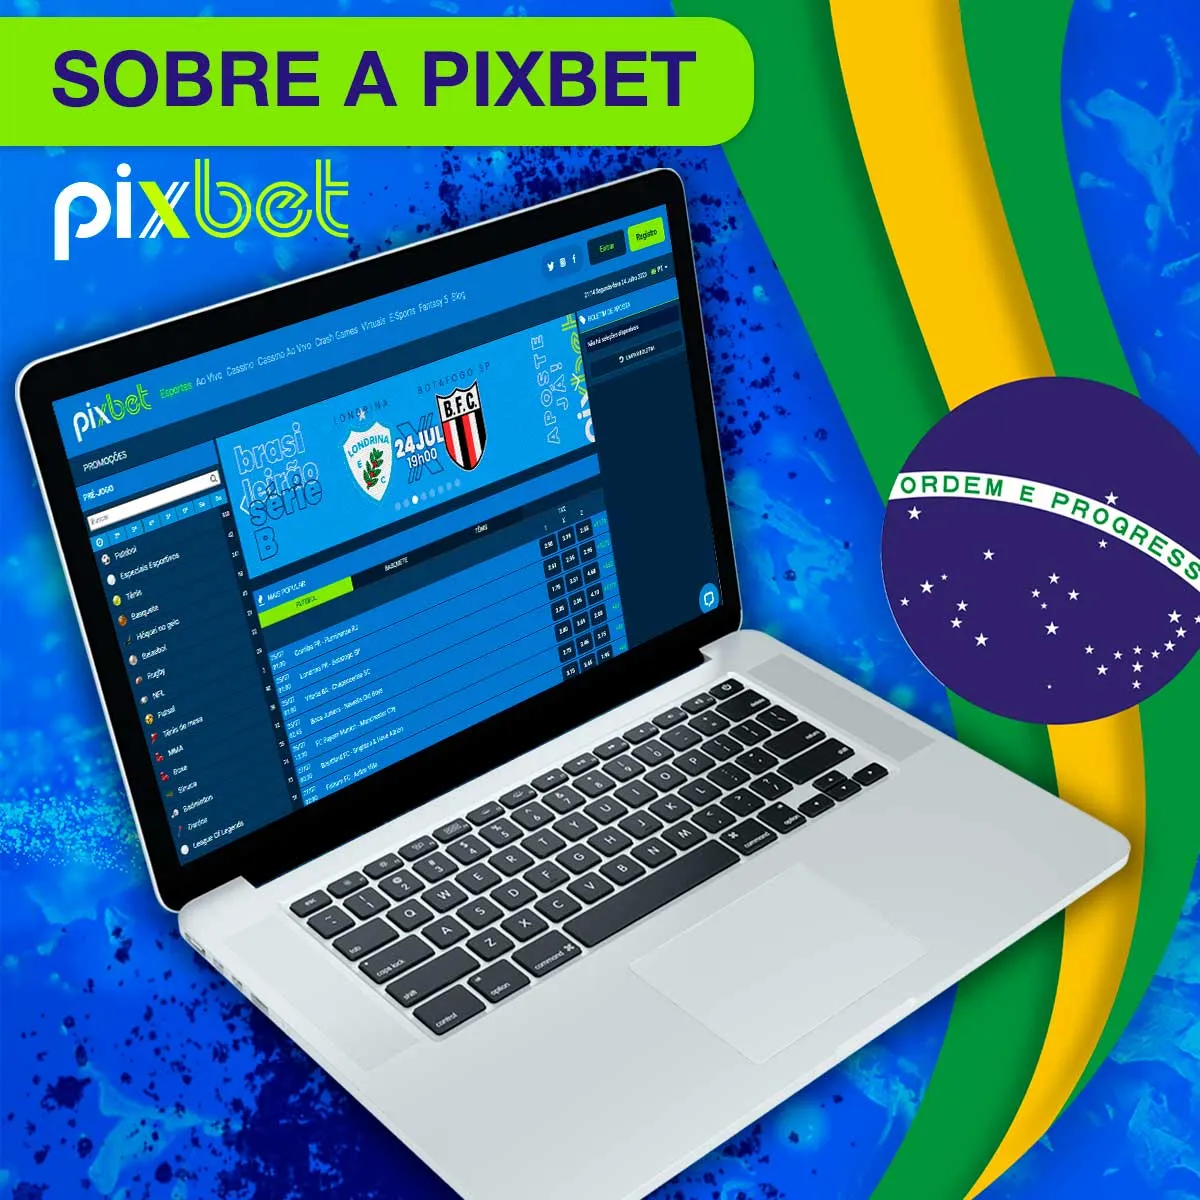 Pixbet casa de apostas no Brasil